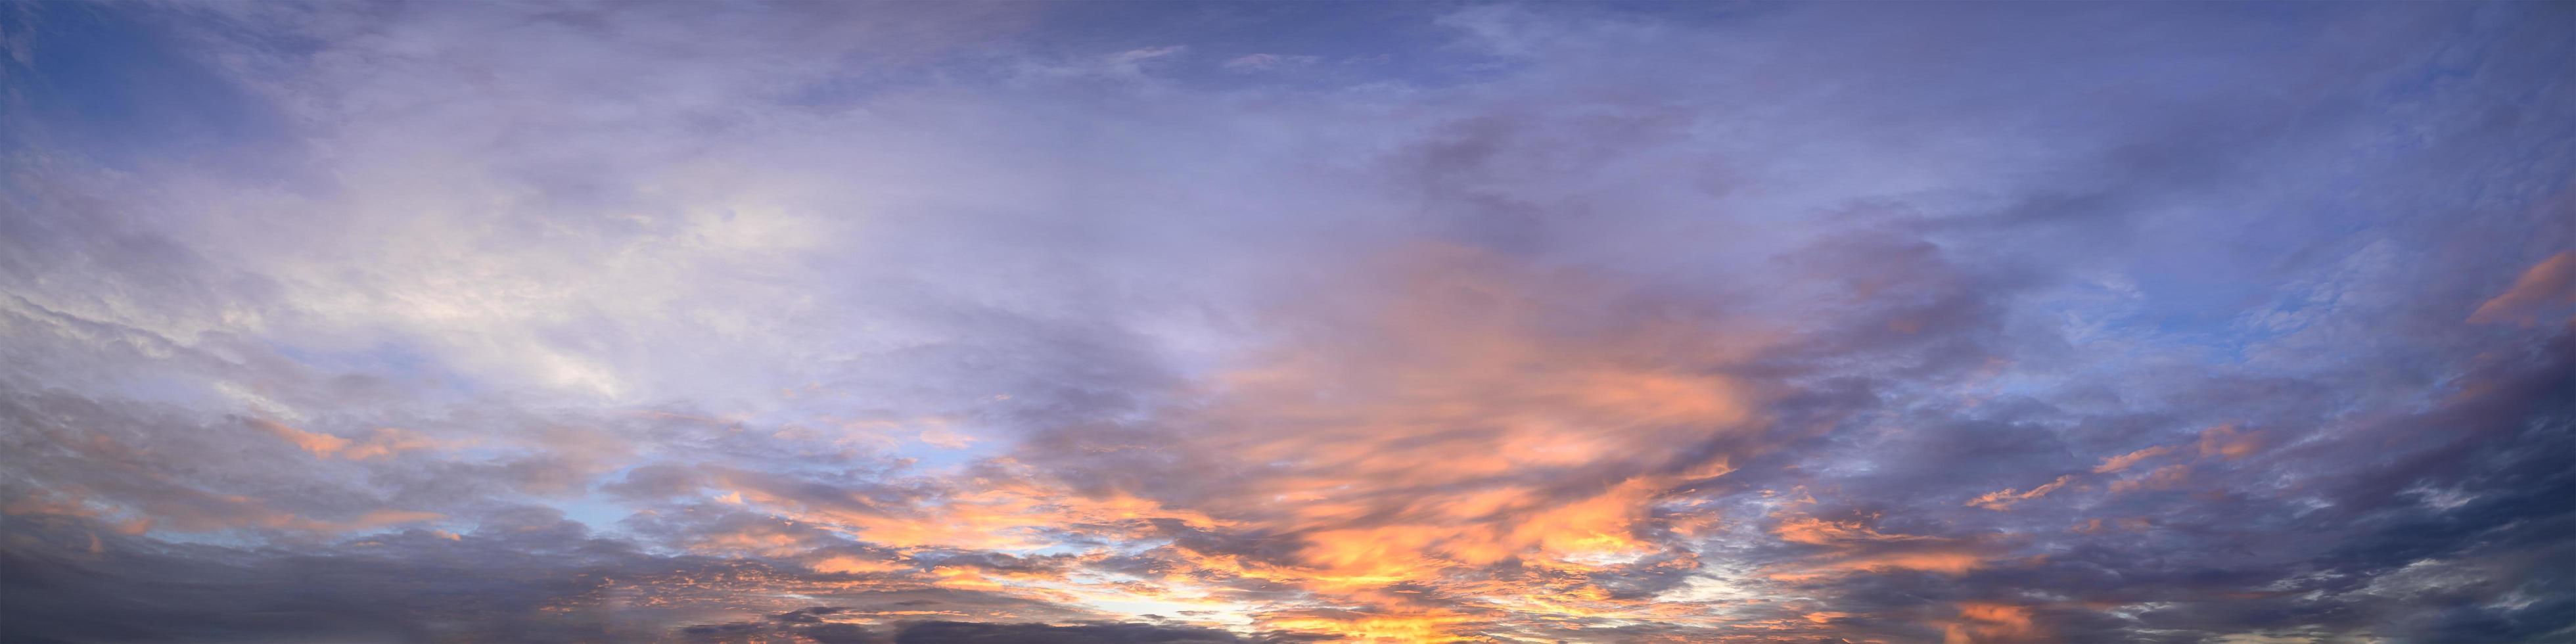 himmel och moln vid solnedgången foto